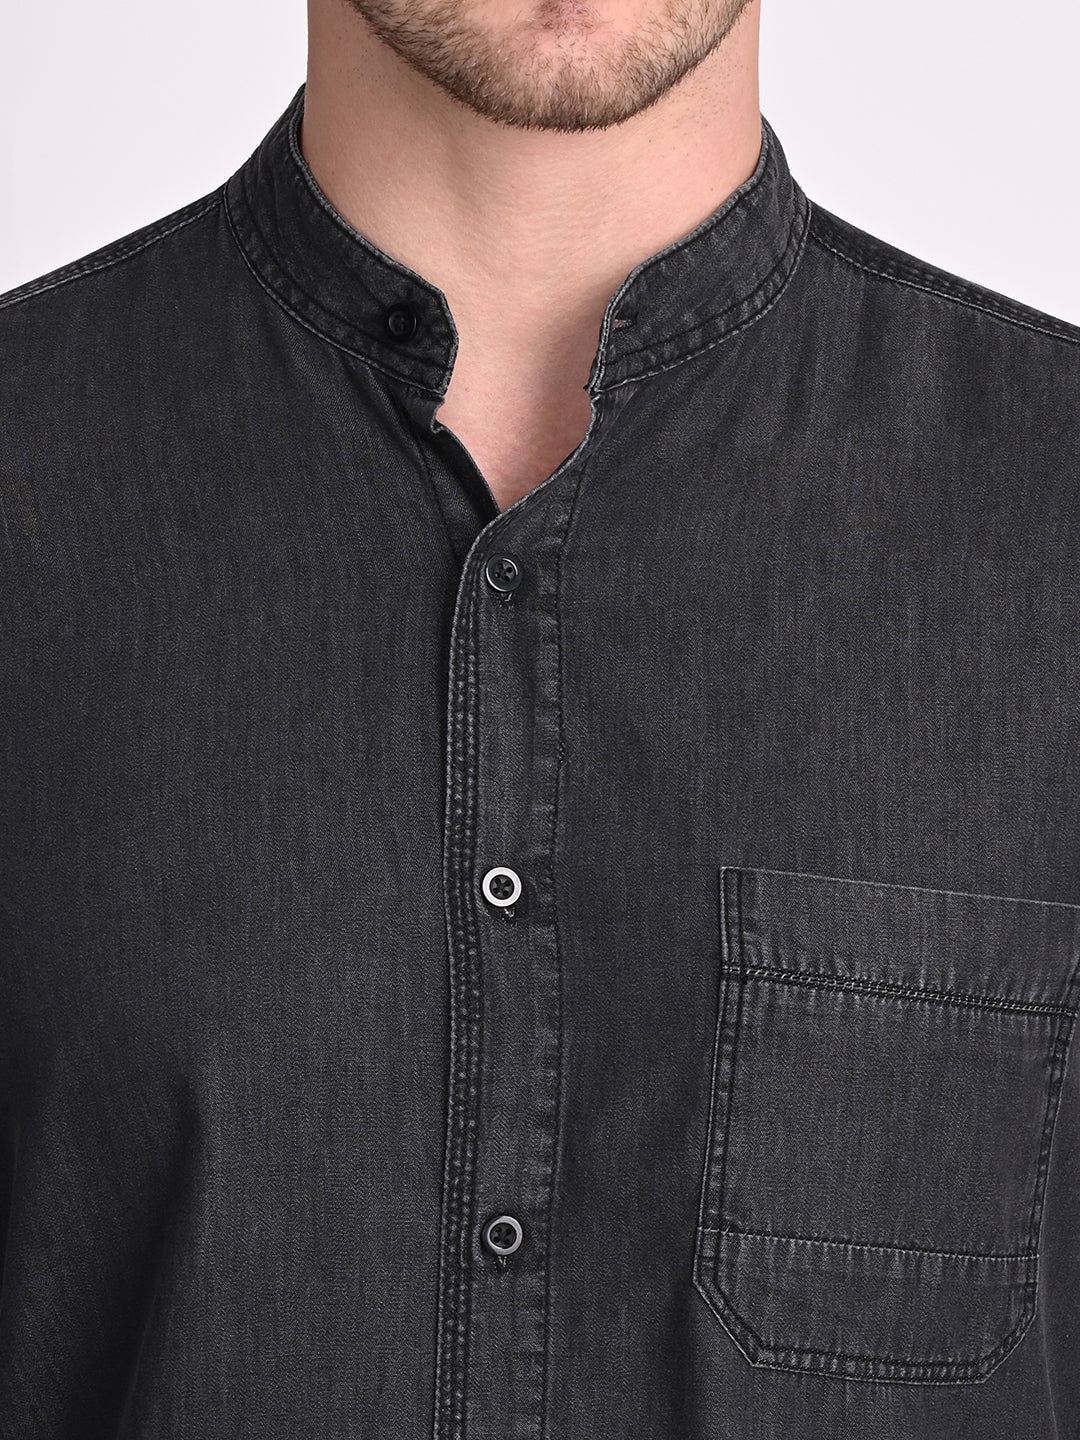 Men Black Opaque Cotton Casual Shirt